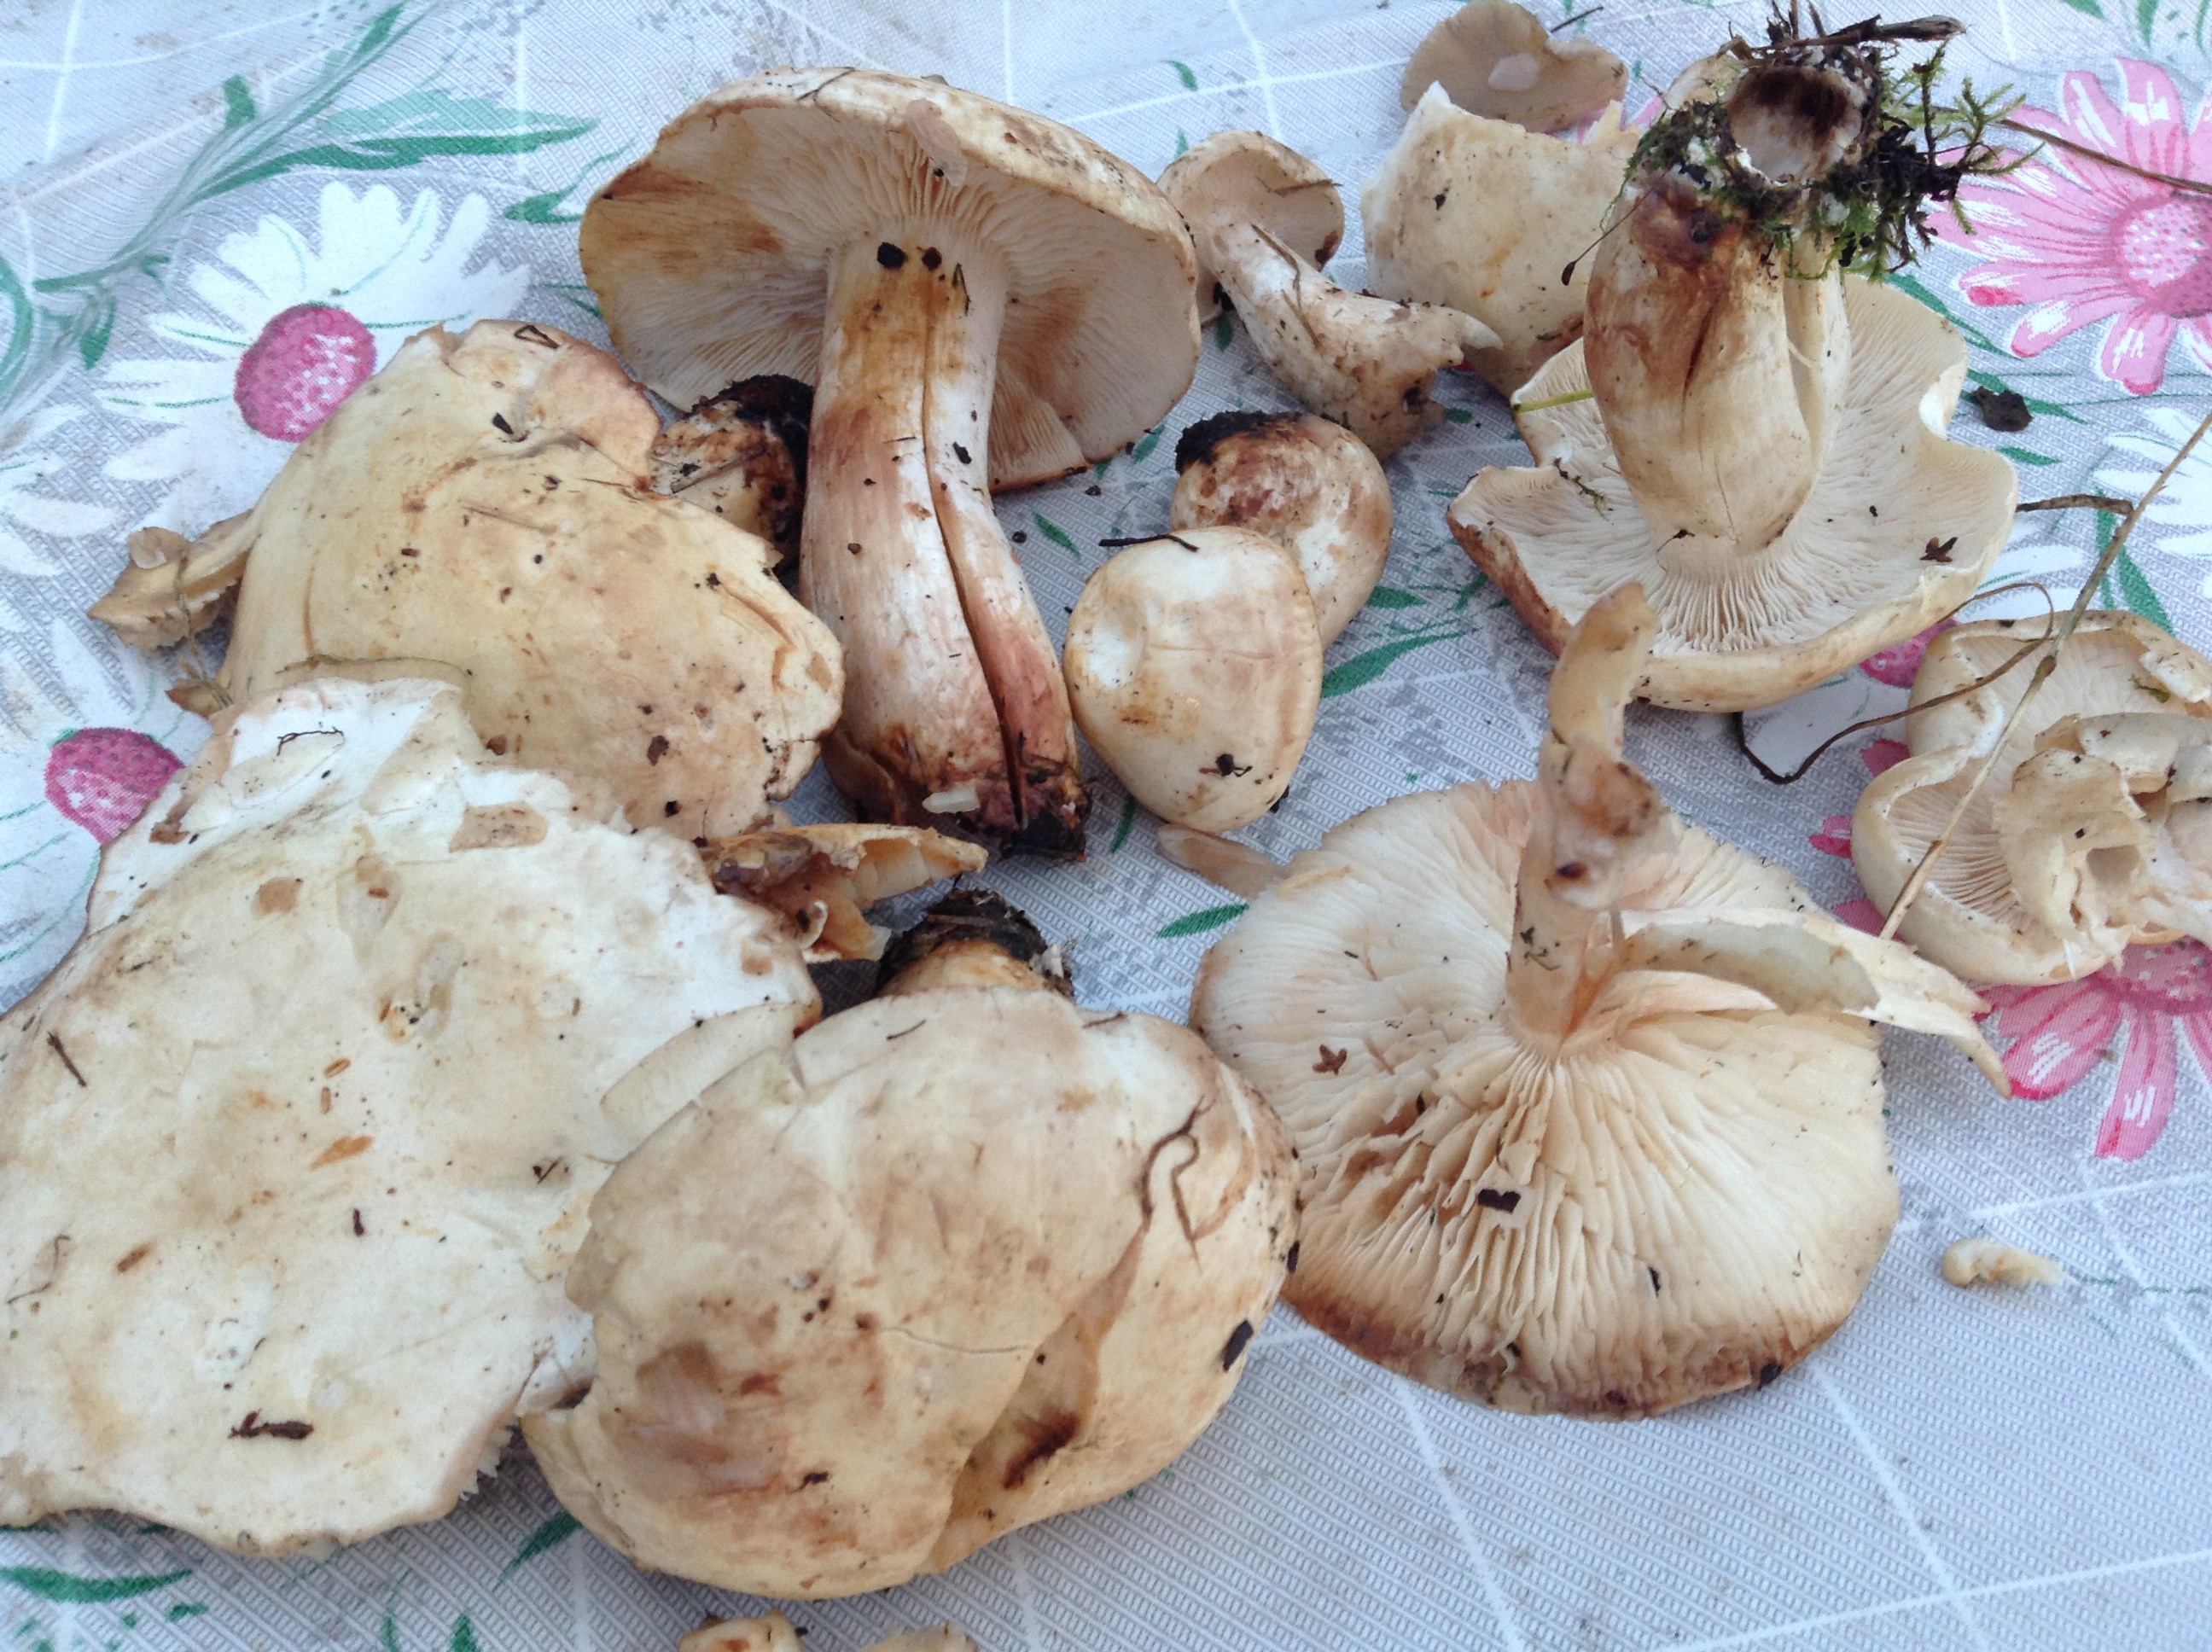 Съедобные грибы в березовых посадках